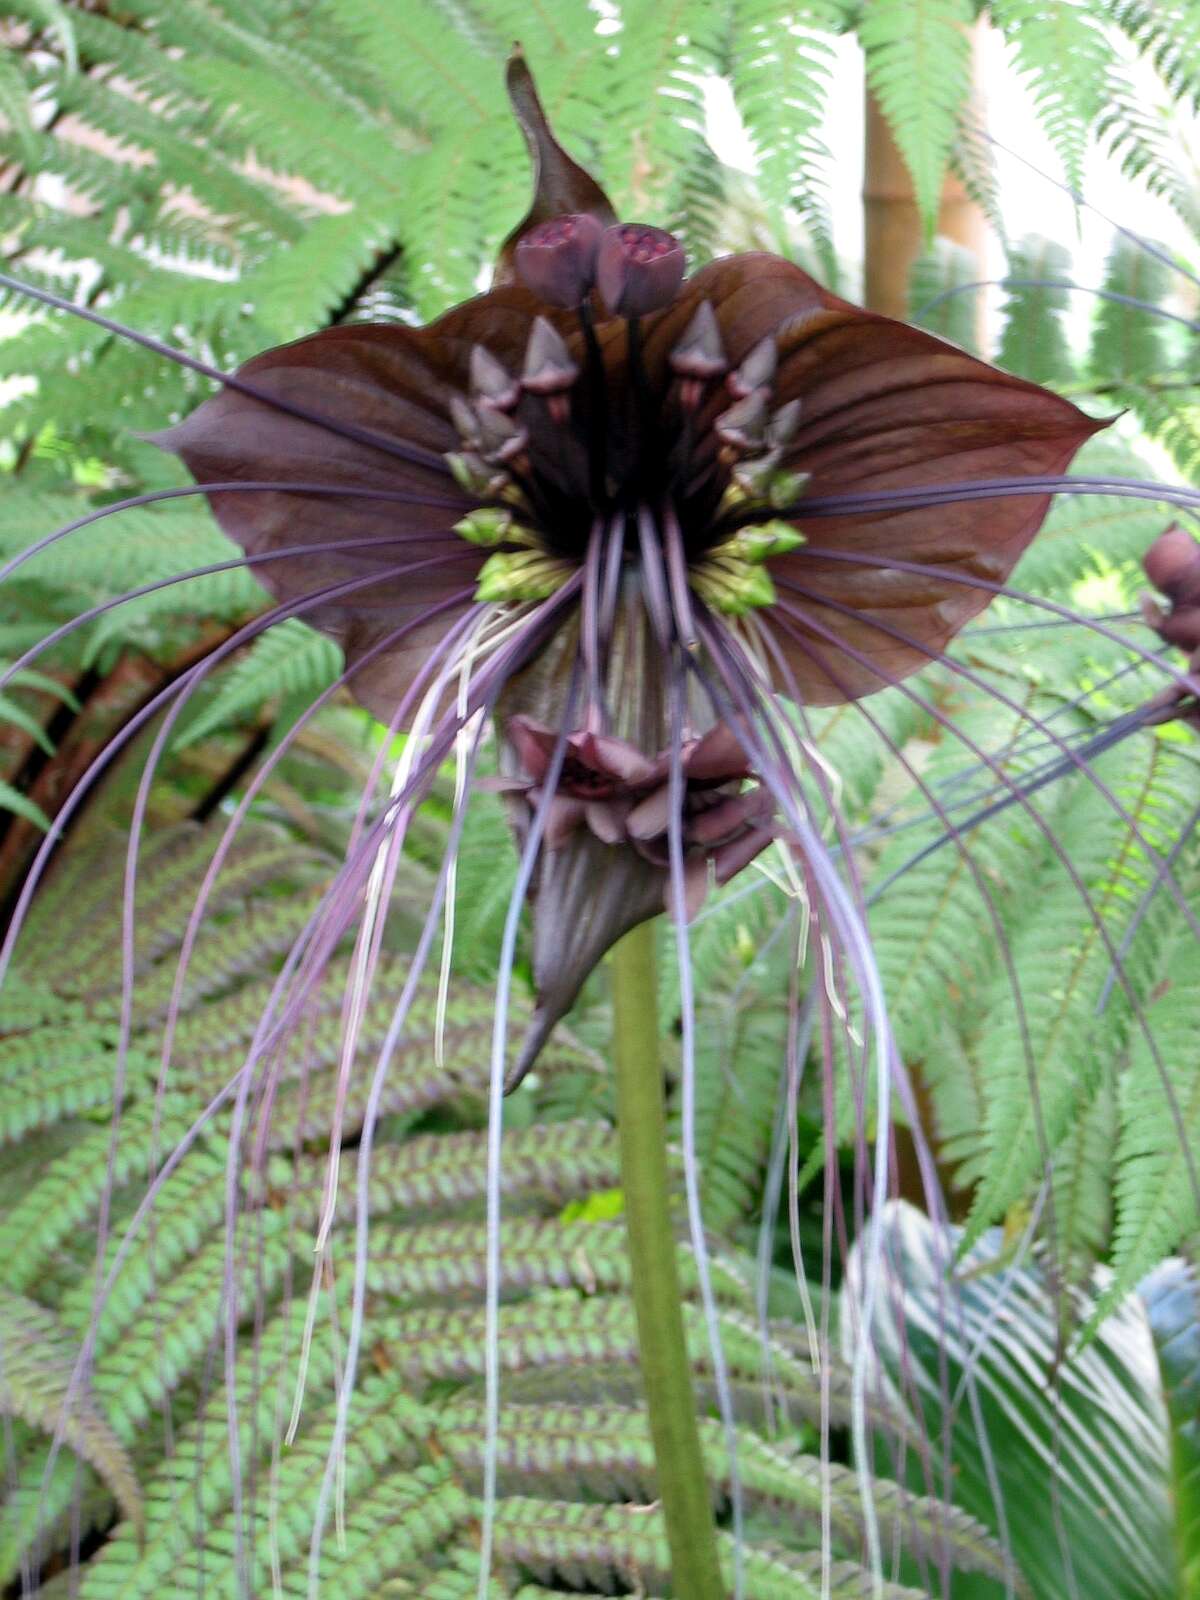 Image of black bat flower